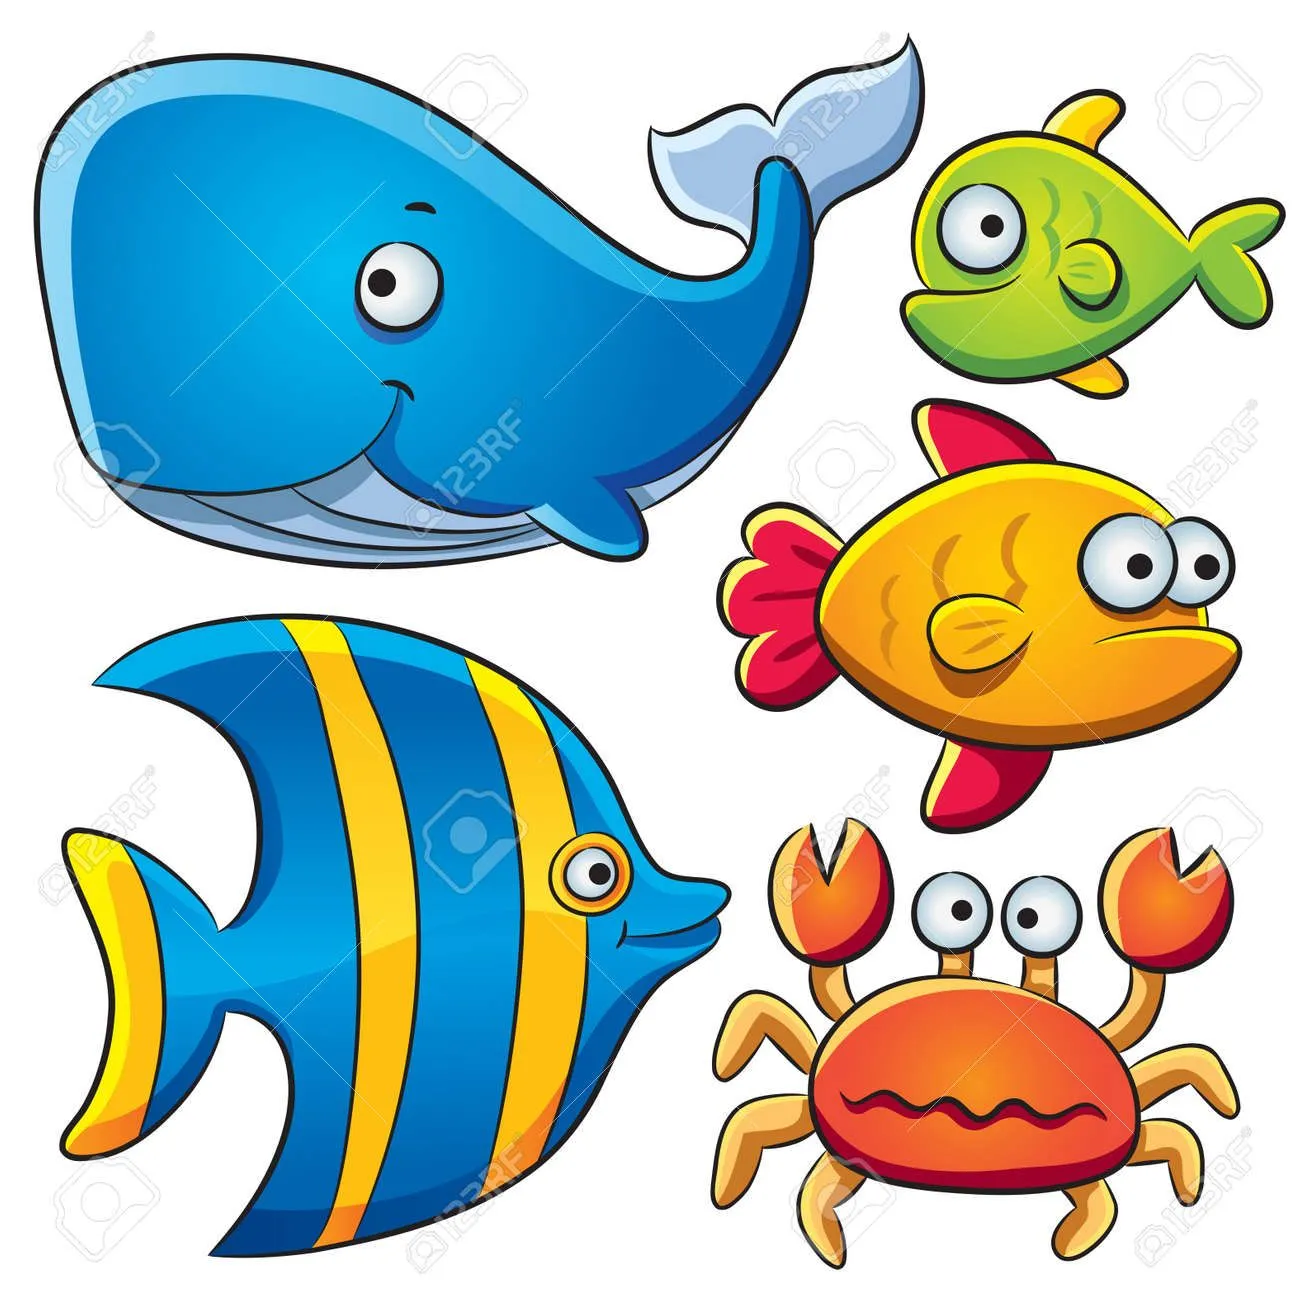 Caricaturas de peces - Imagui